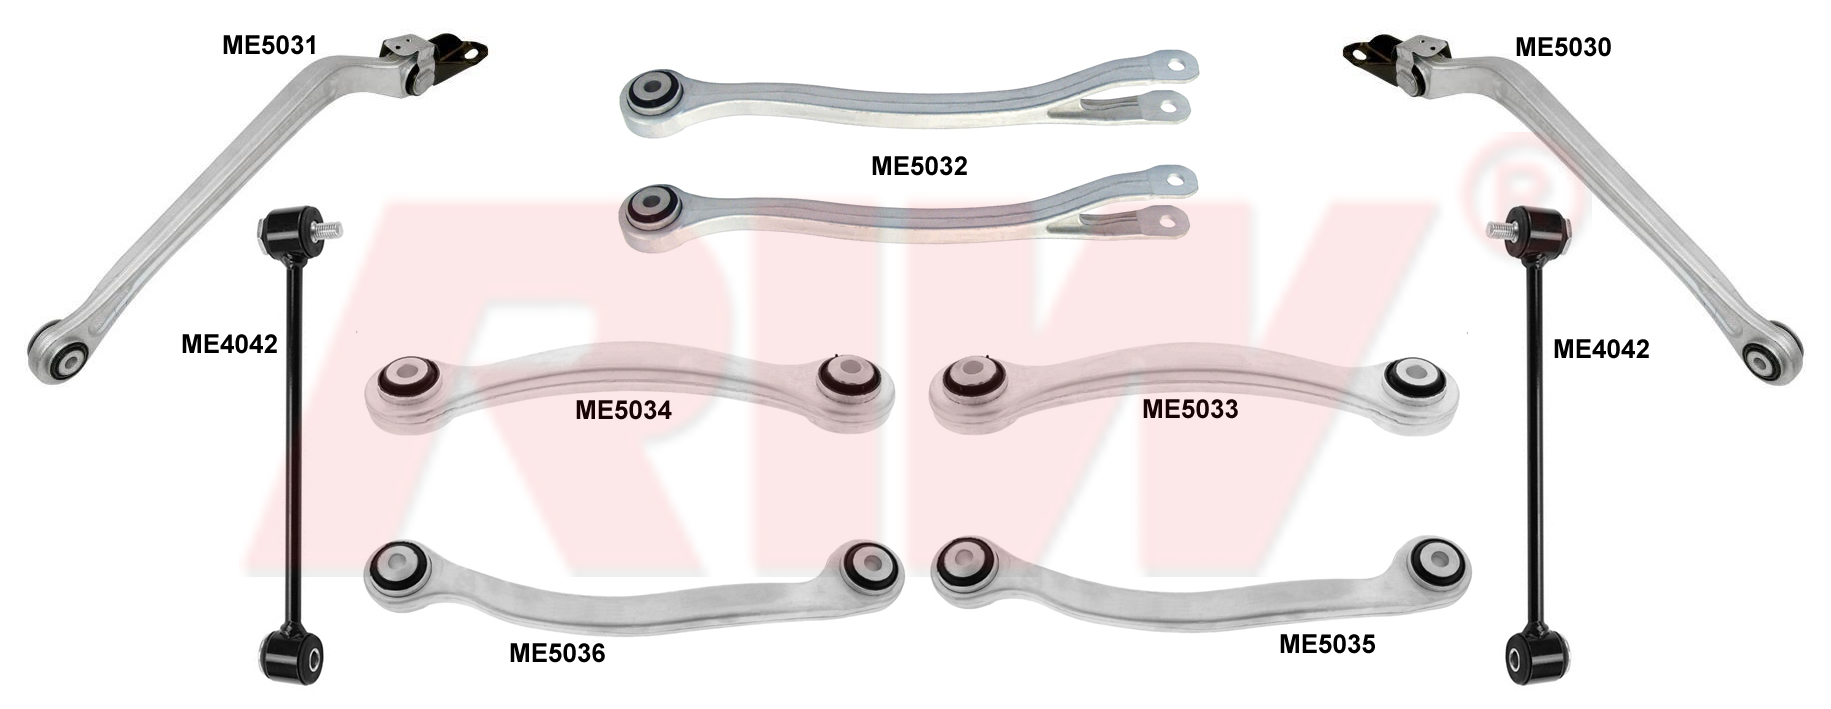 MERCEDES SL (R230) 2001 - 2012 Repair Kit